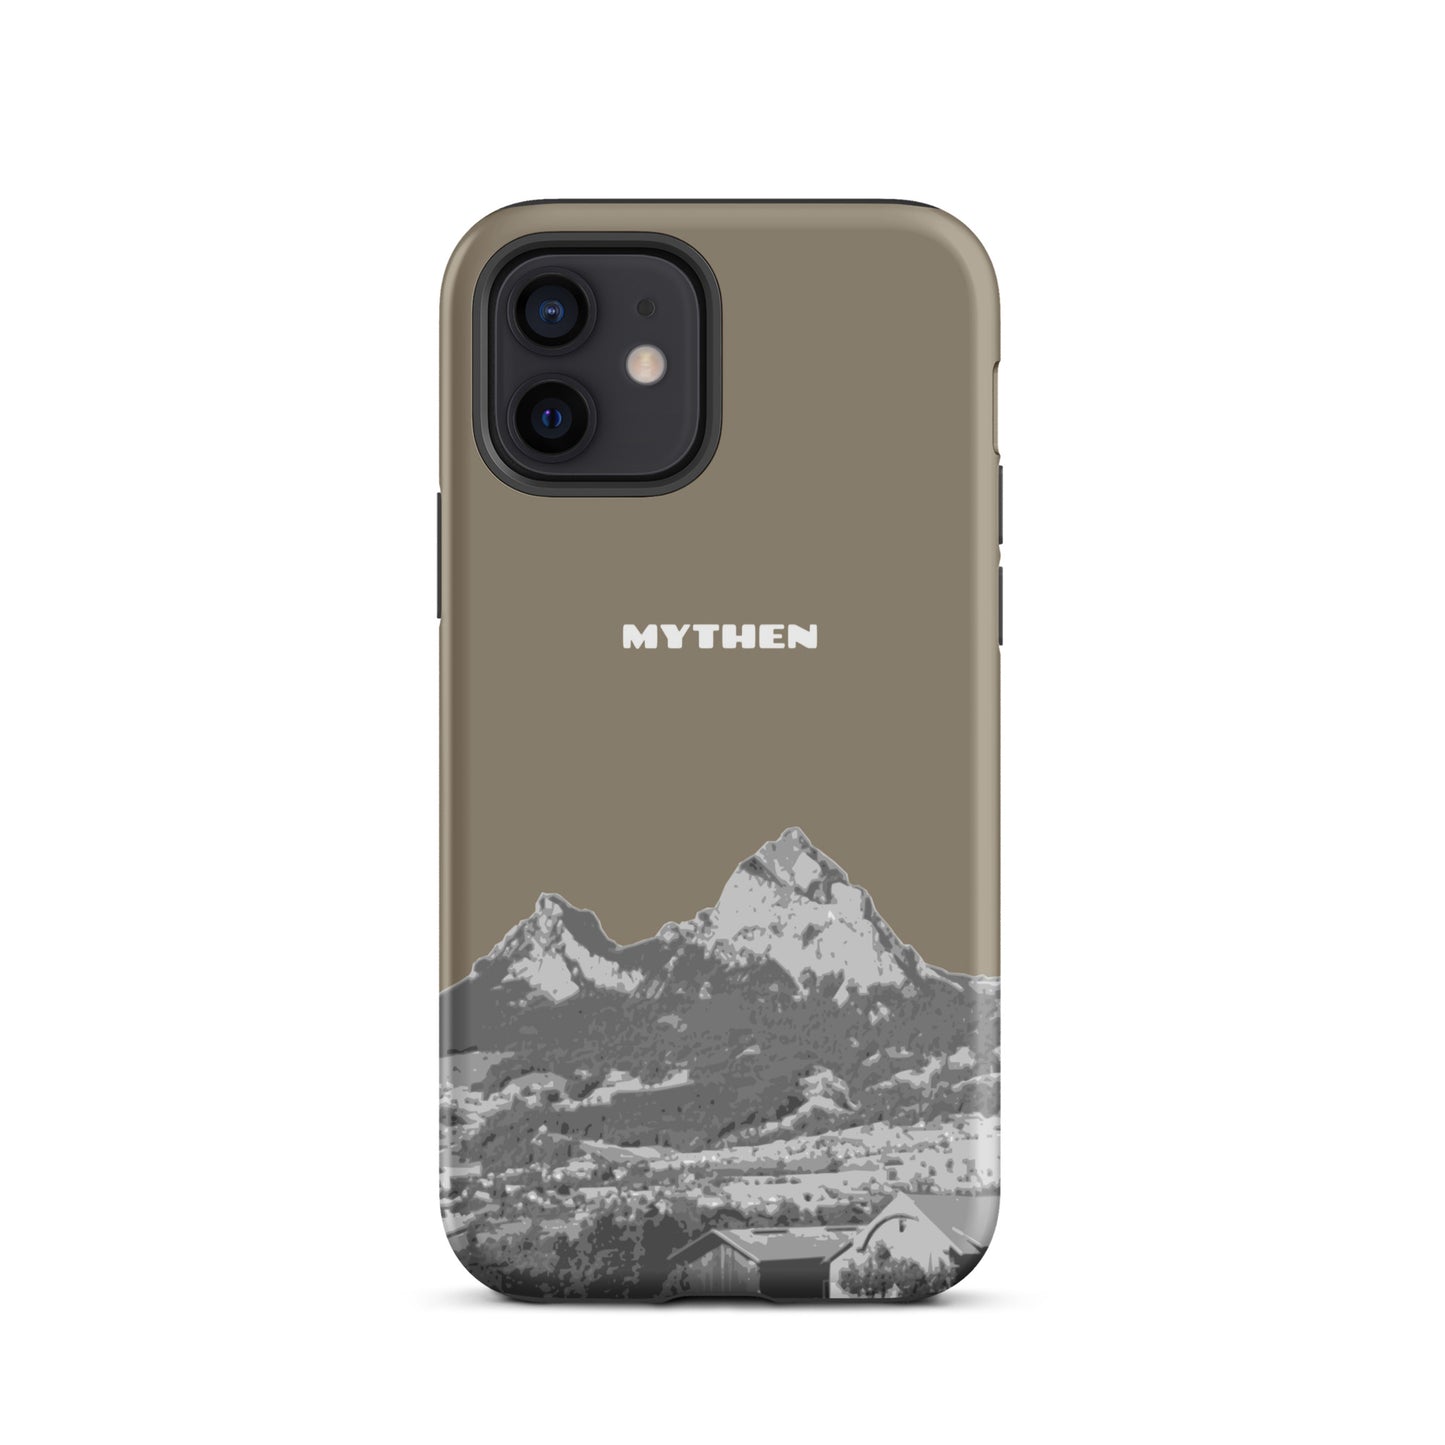 Hülle für das iPhone 12 von Apple in der Farbe Graubraun, dass den Grossen Mythen und den Kleinen Mythen bei Schwyz zeigt. 